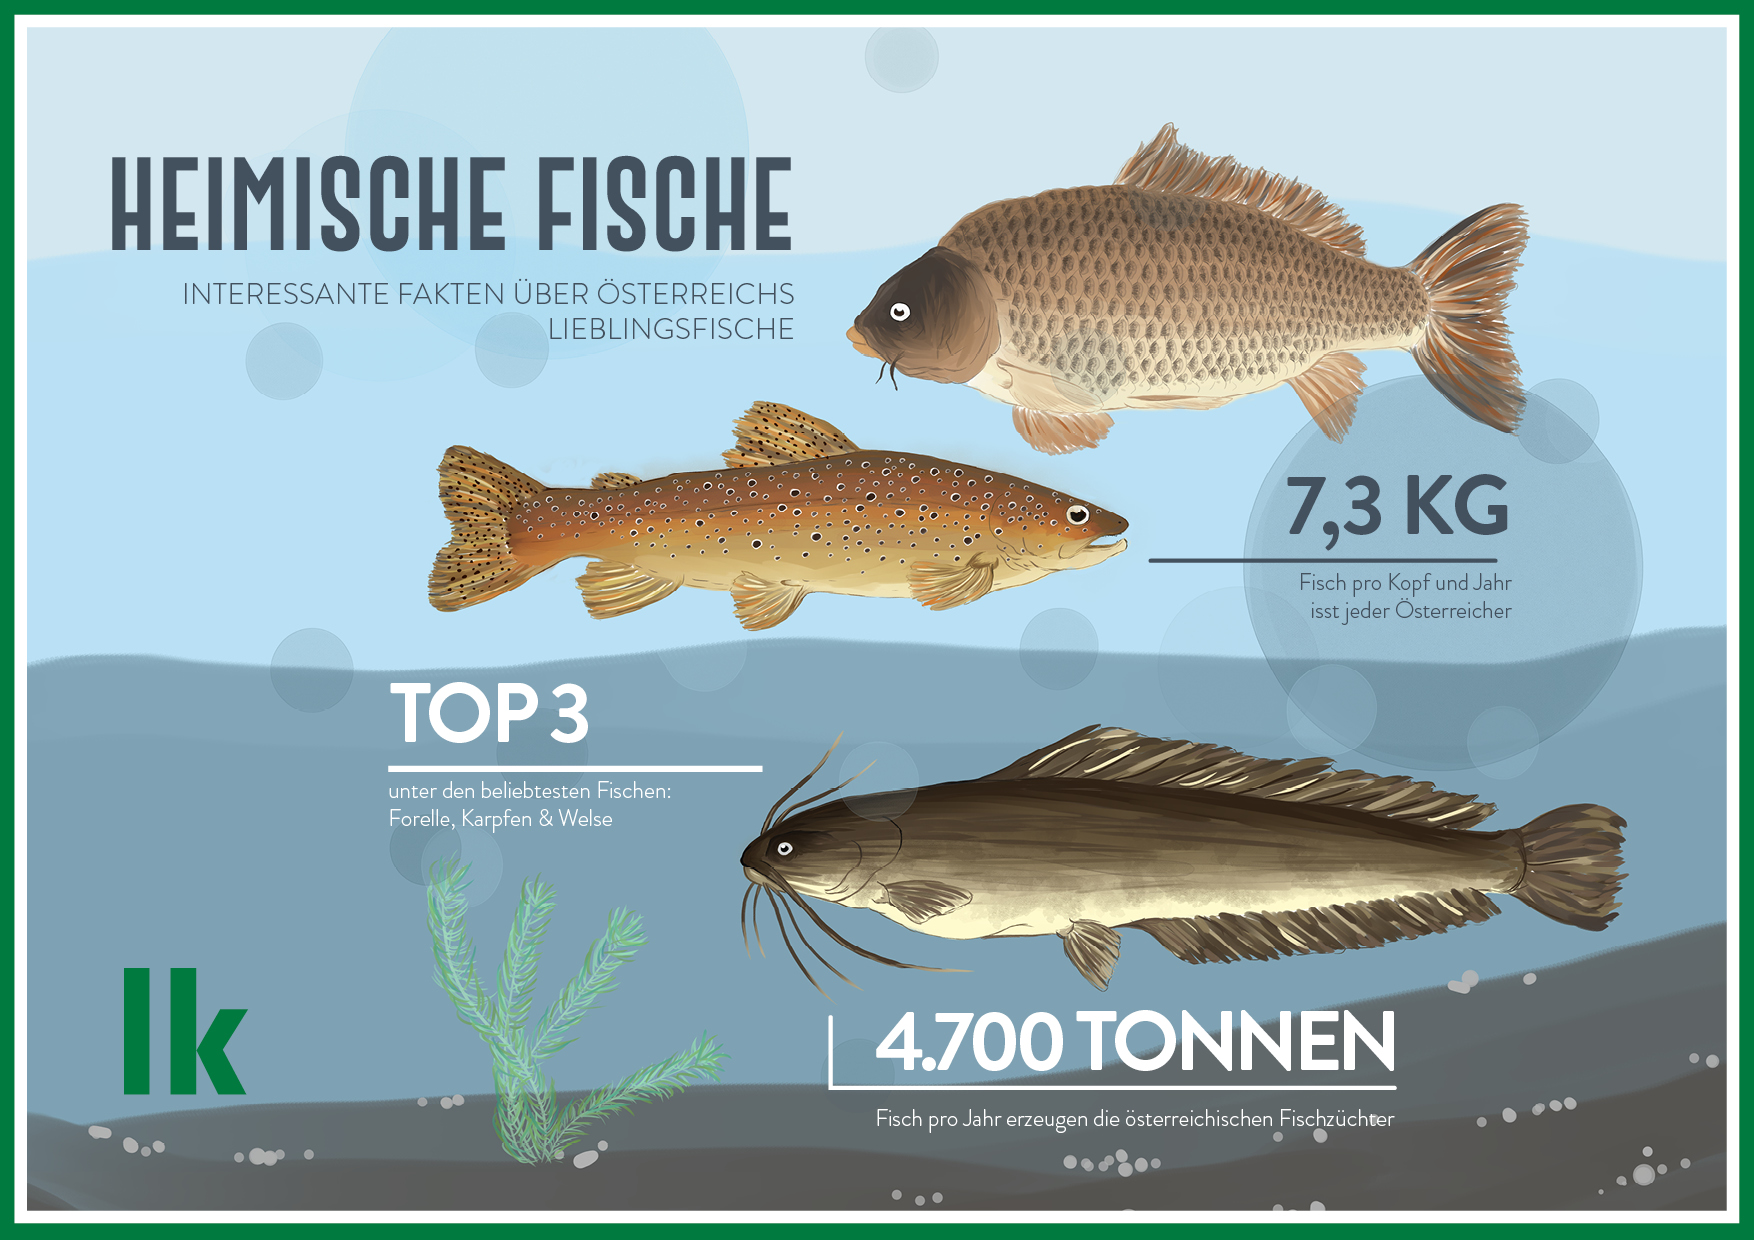 Infografik: Heimische Fische, interessante Fakten über Österreichs Lieblingsfische, 7,3 kg Fisch pro Kopf und Jahr isst jeder Österreicher, TOP3 unter den beliebtesten Fischen sind Forelle, Karpfen und Welse, 4700 t Fisch pro Jahr erzeugen die österreichischen Fischzüchter